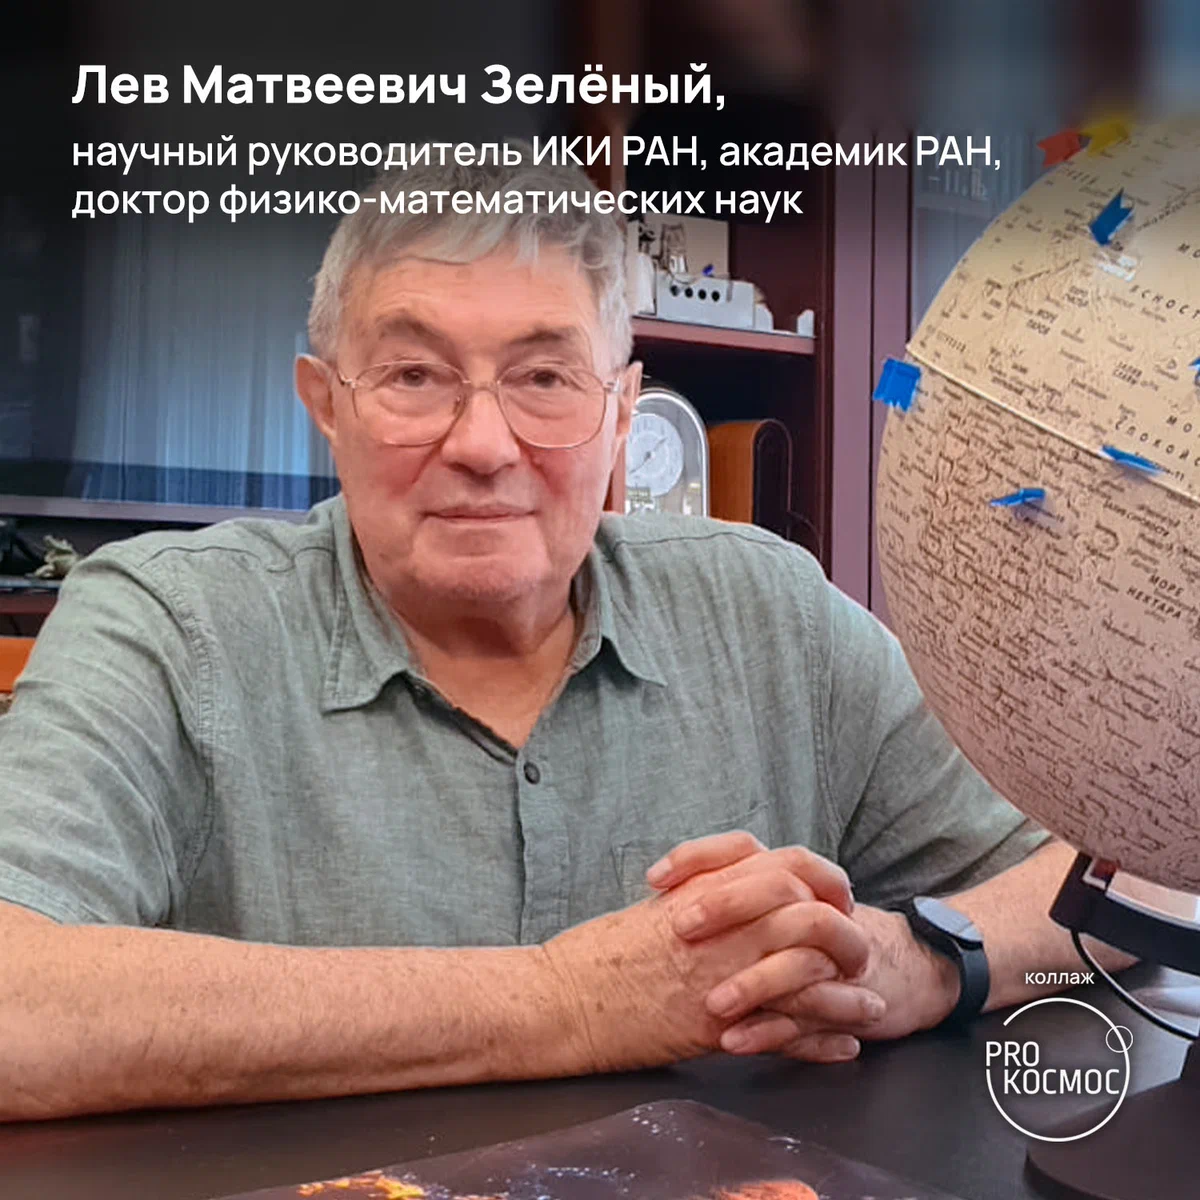 Изданию Pro Космос удалось пообщаться со Львом Матвеевичем Зелёным — известным учёным, бывшим директором Института космических исследований РАН (2002—2017 гг.-20 height=1200px width=1200px